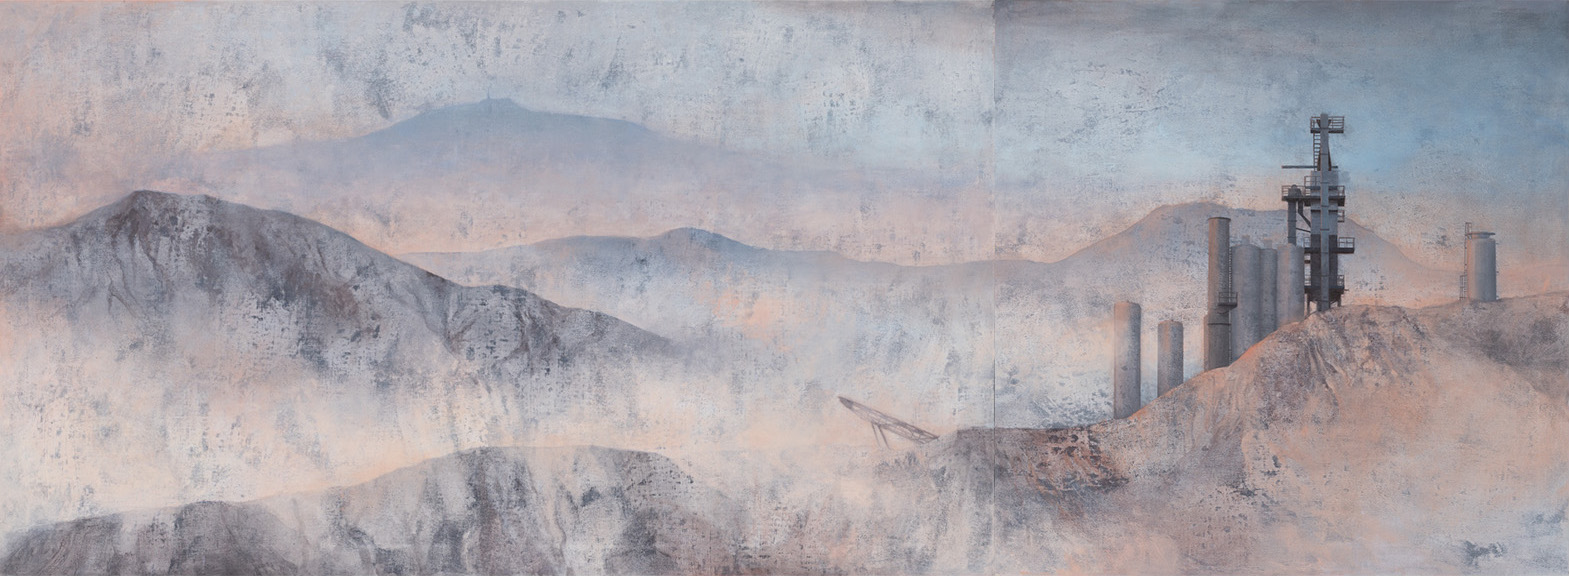 joanna pałys hałdy c22 1 2 pejzaż szeroki obraz góry błękitny różowy industrial dyptyk obraz